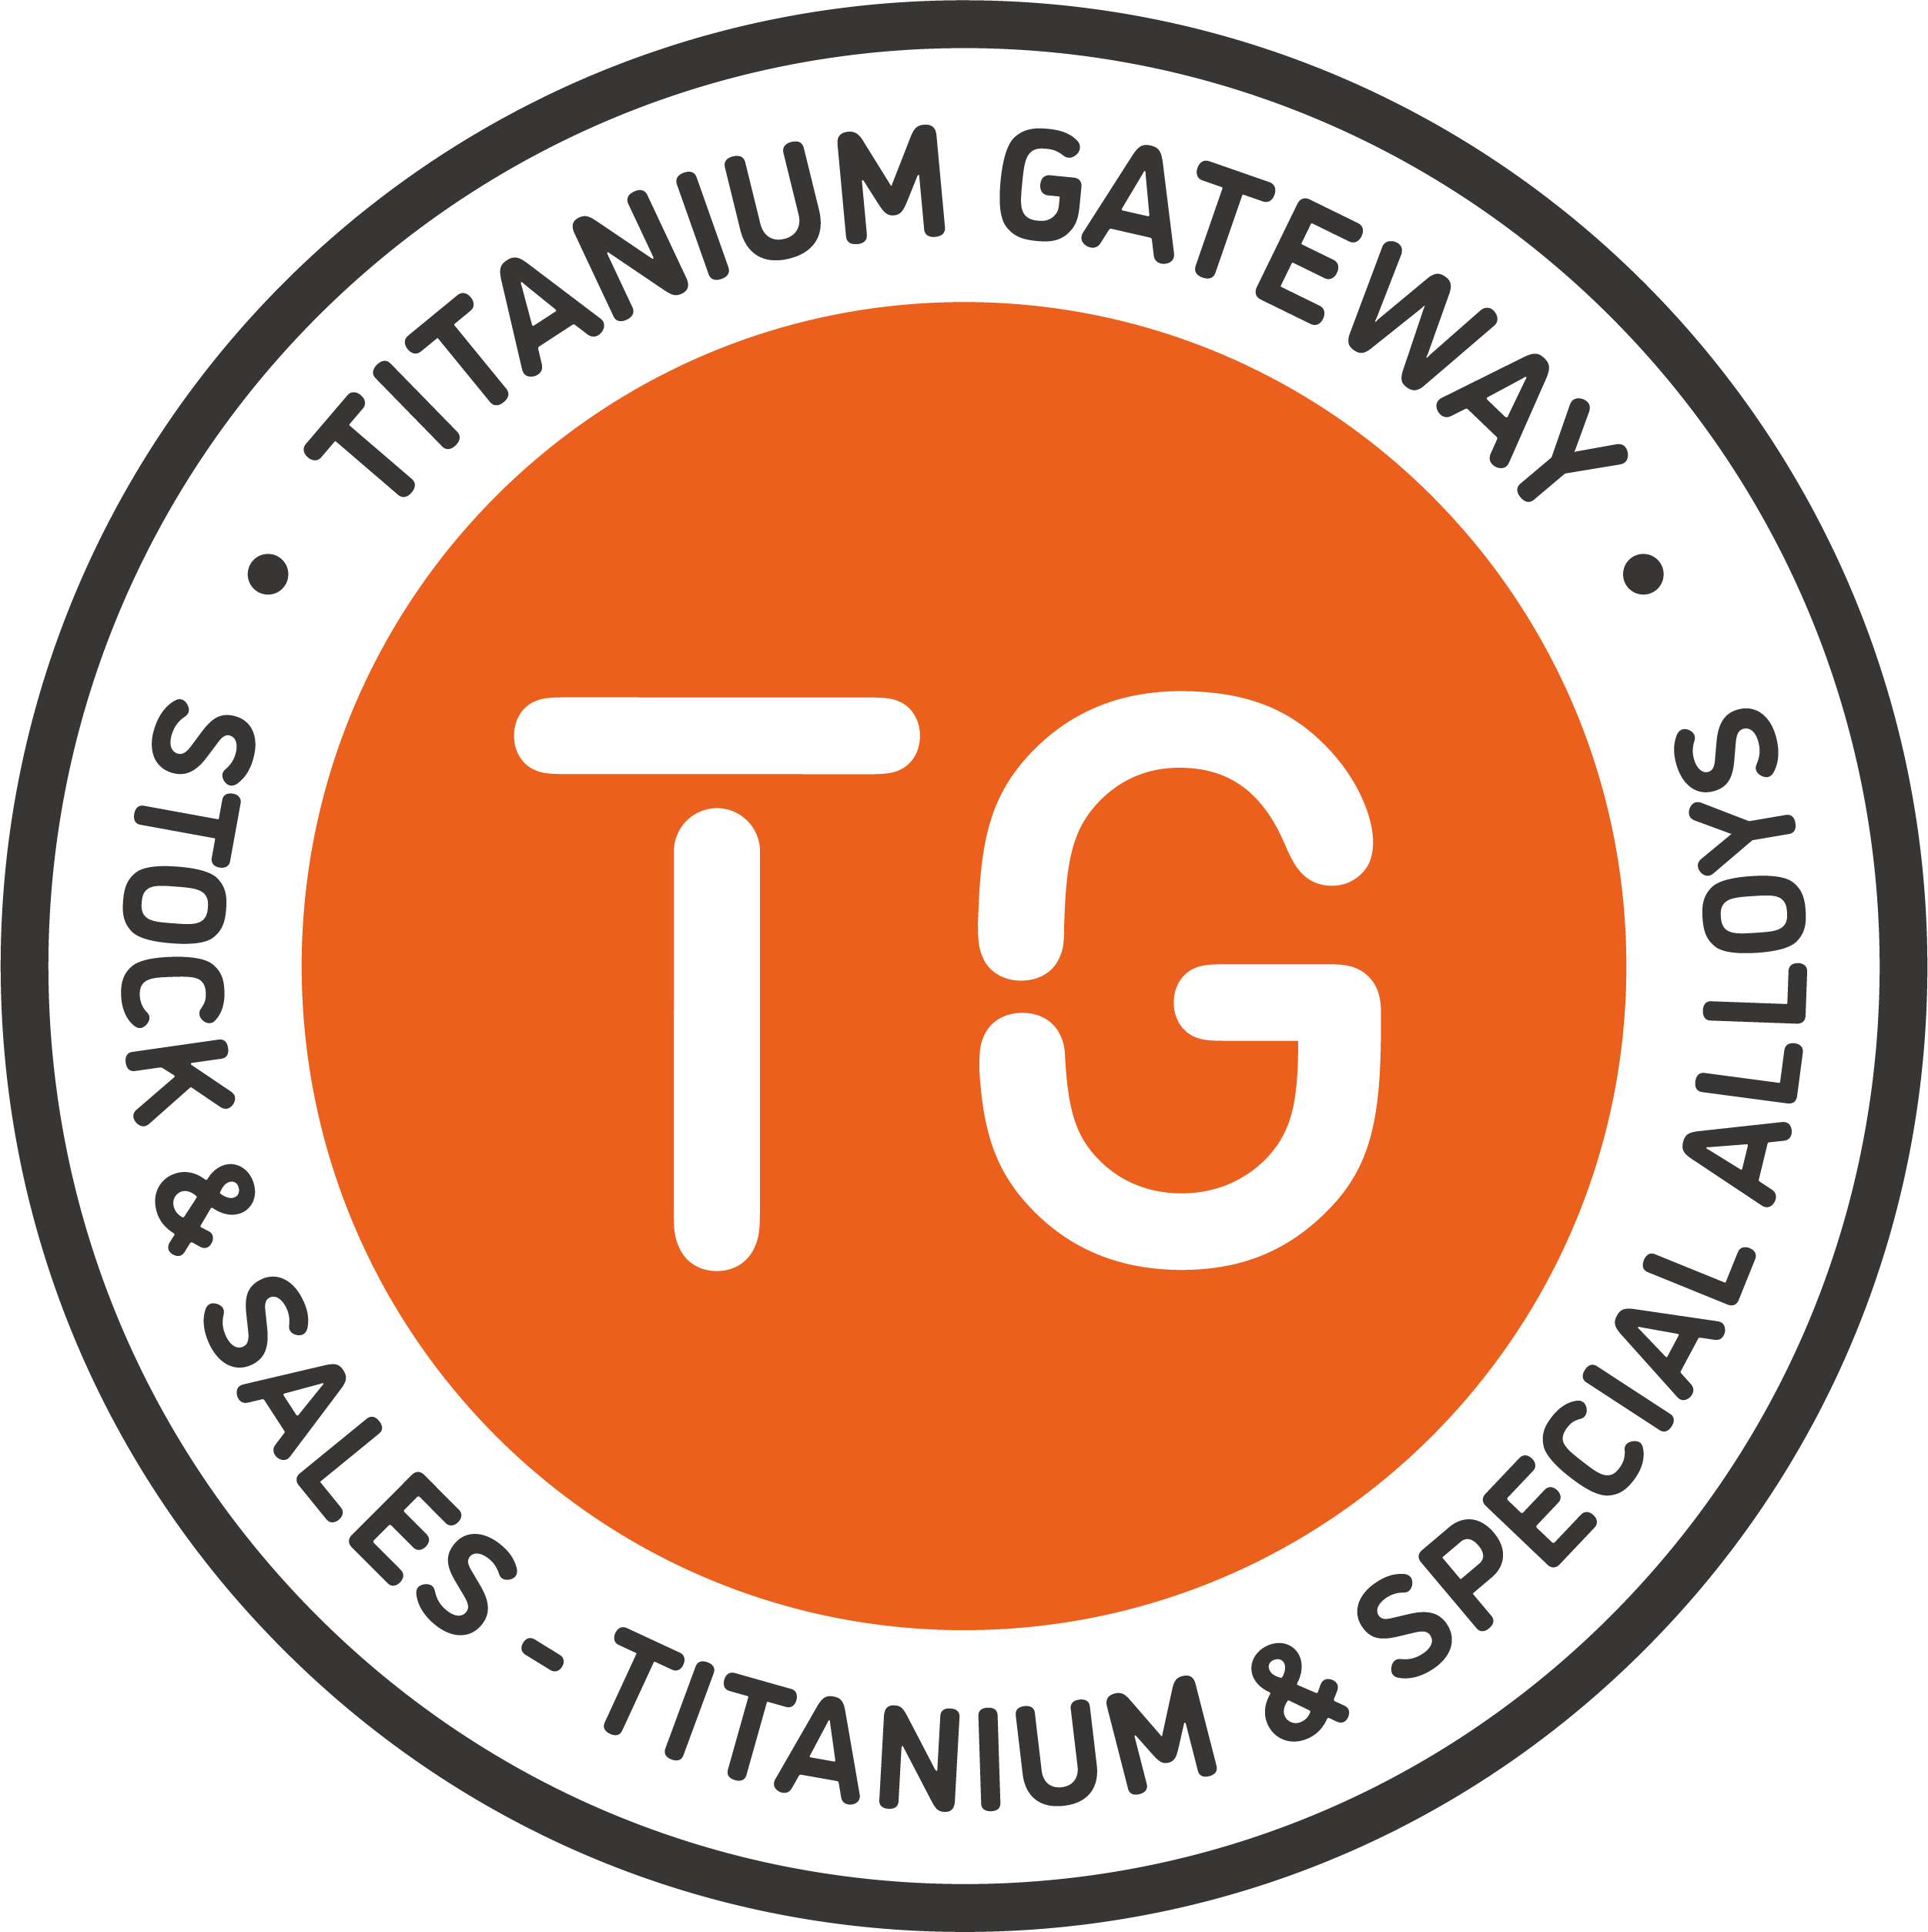 Redovisningsekonom sökes till Titanium Gateway!